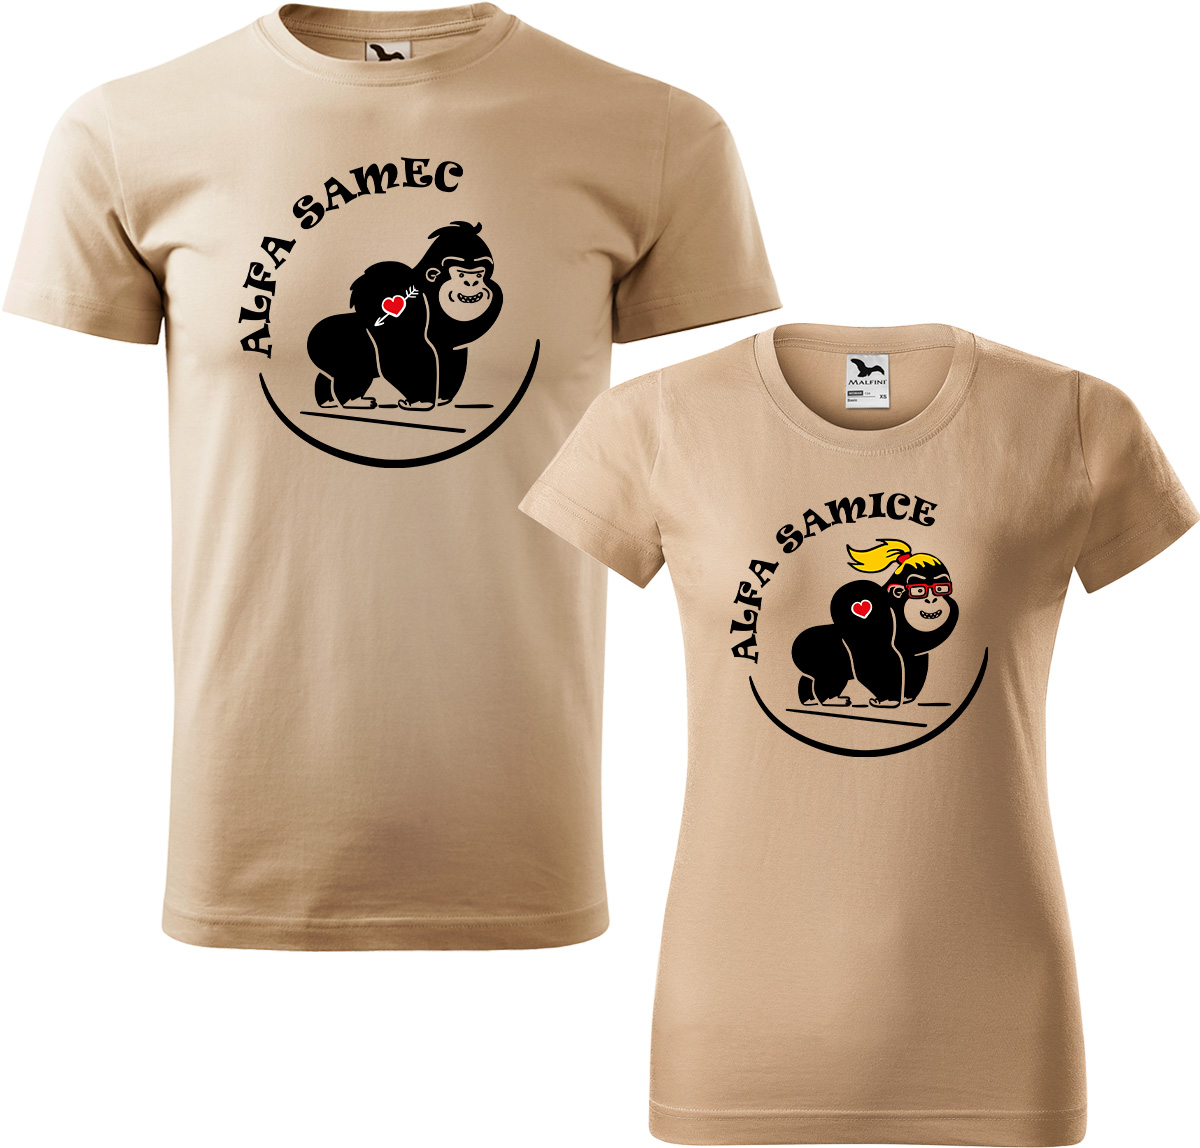 Trička pro páry - Alfa samec a alfa samice Barva: Písková (08), Velikost dámské tričko: S, Velikost pánské tričko: XL